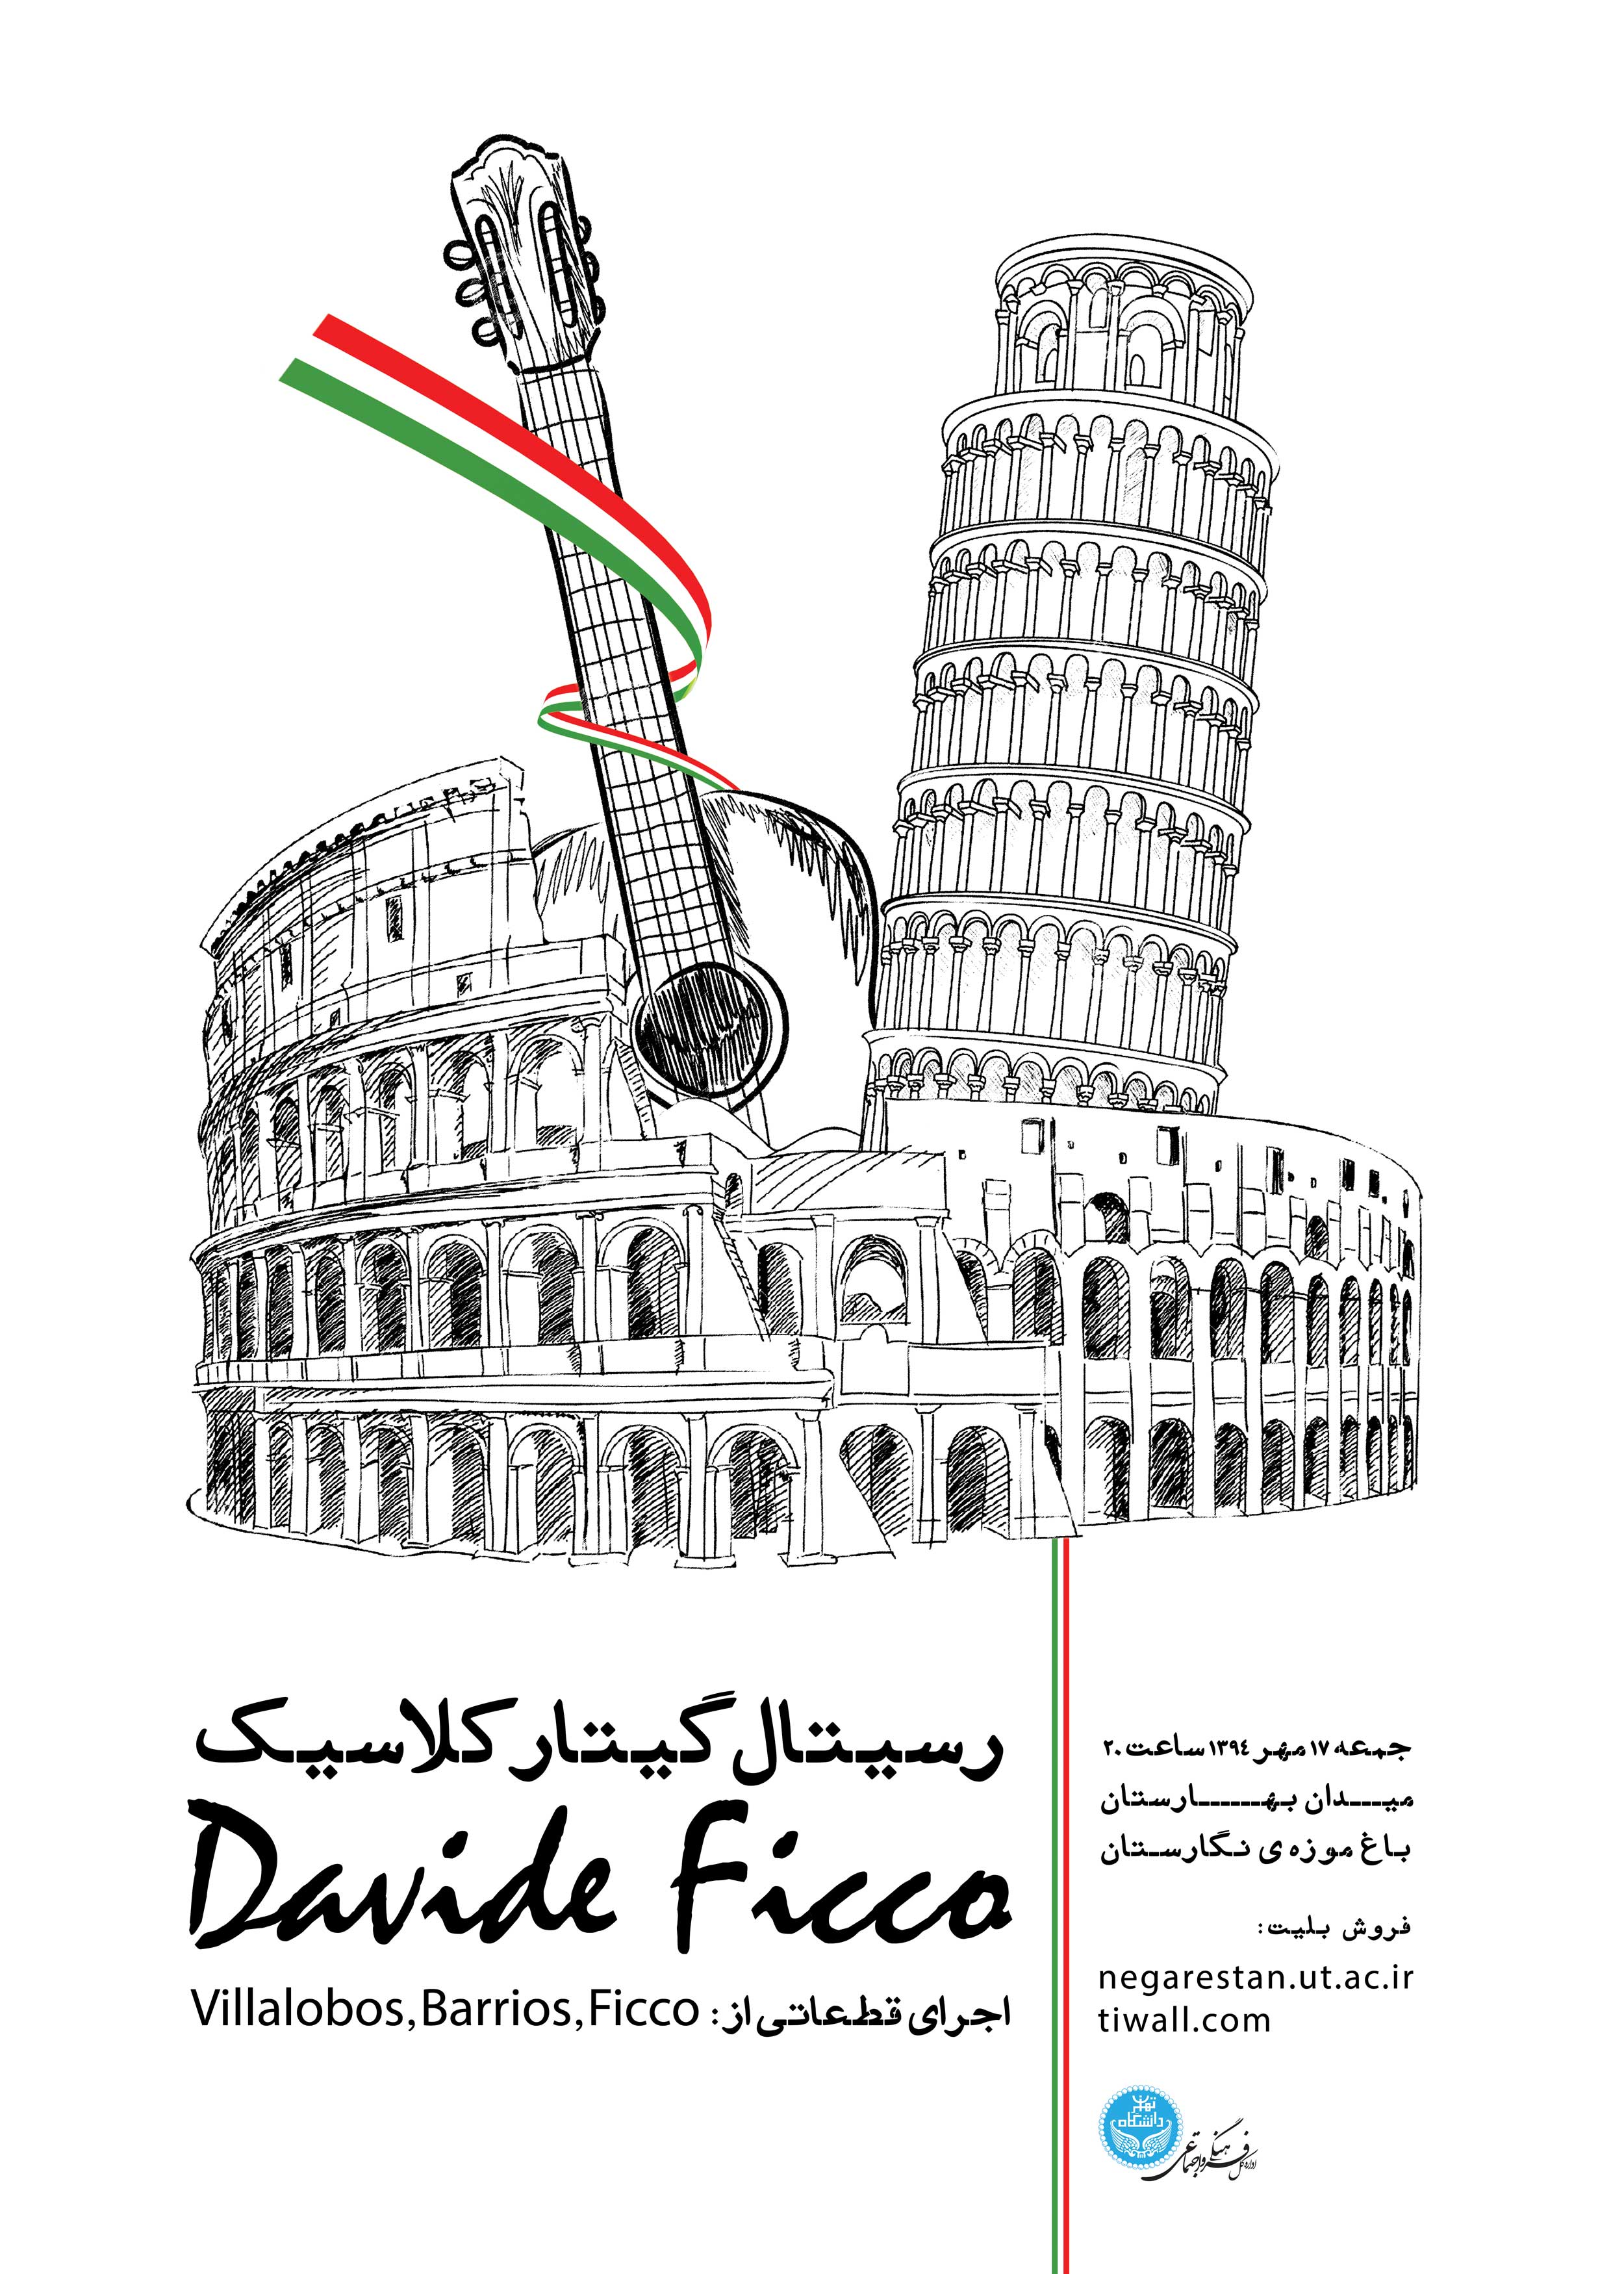 David Ficco